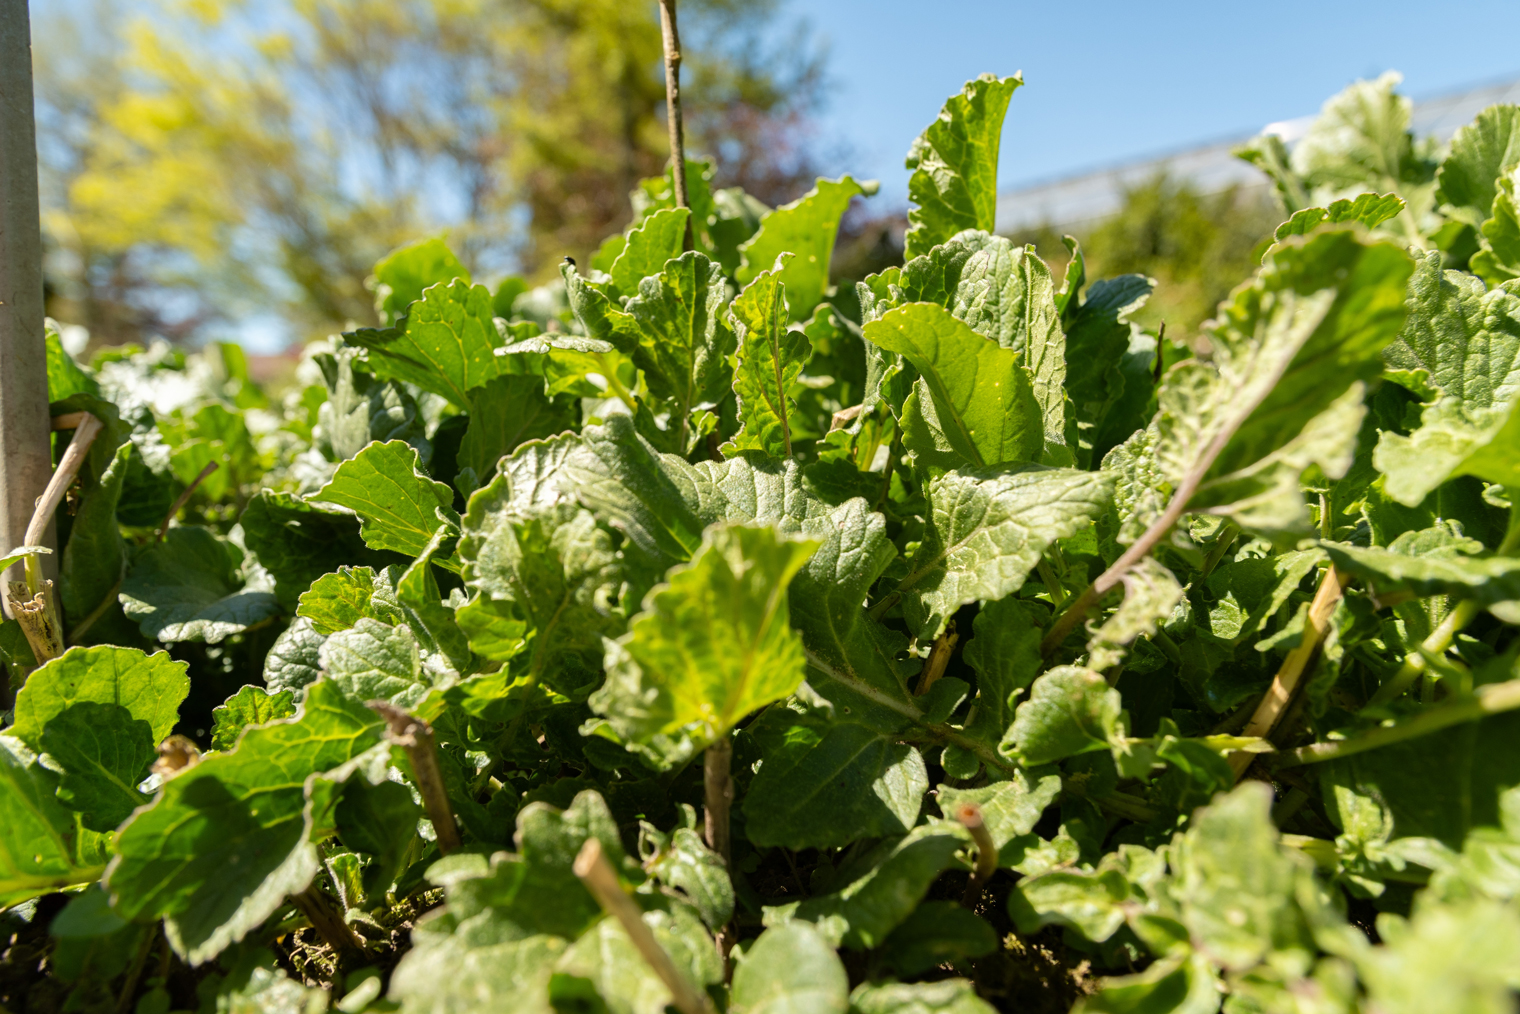 Горчица защищает будущие посадки от вредителей и болезней. Но летом она сама может поражаться крестоцветной блошкой, поэтому сеять ее лучше ближе к осени. Фотография: Robert Buchel / Shutterstock / FOTODOM